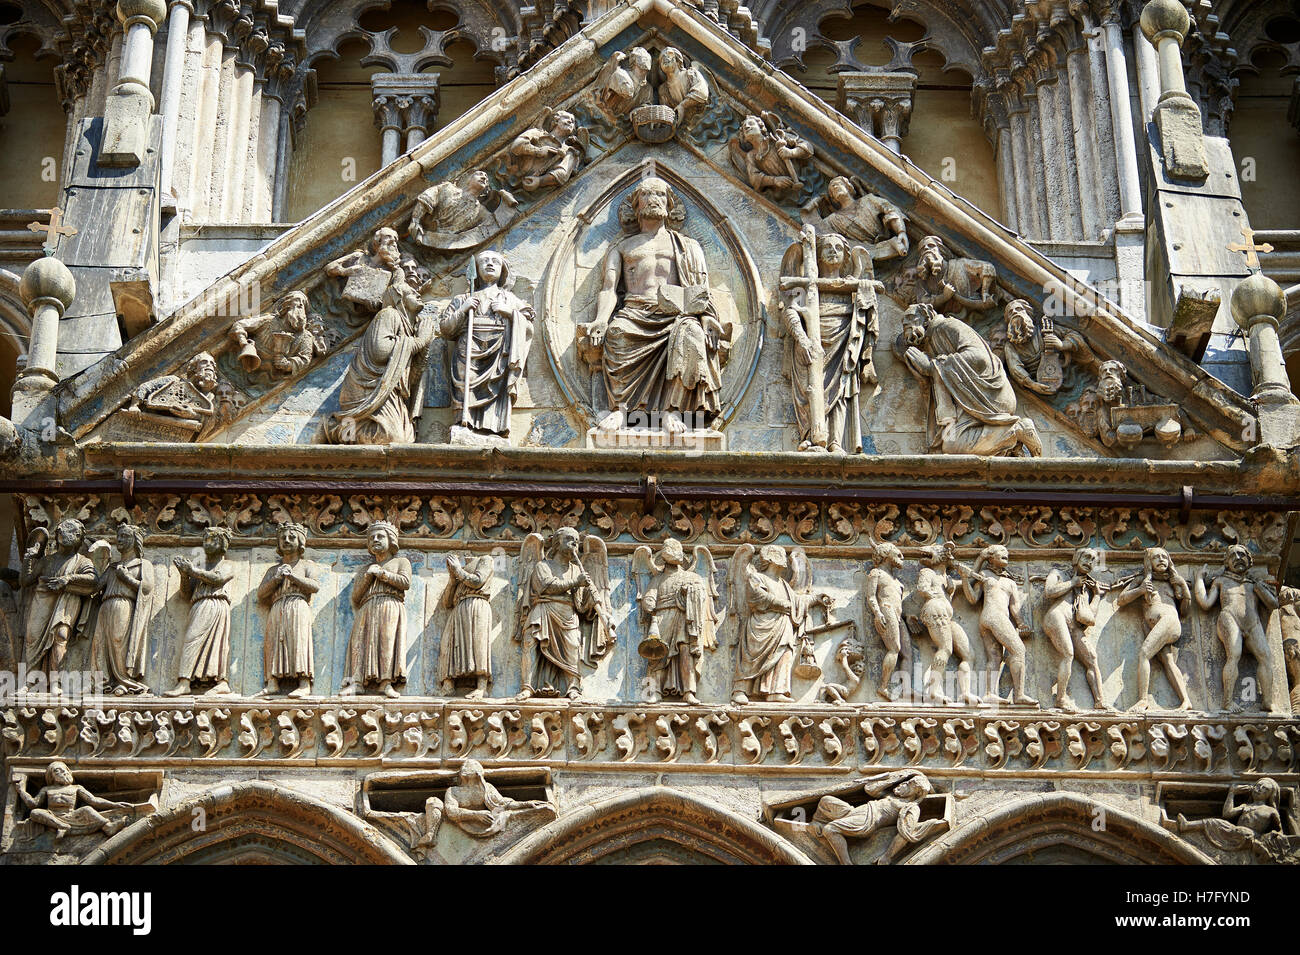 Sculptures et d'architecture gothique tardif des ajouts à la façade de la cathédrale romane du xiie siècle Ferrara, Italie Banque D'Images